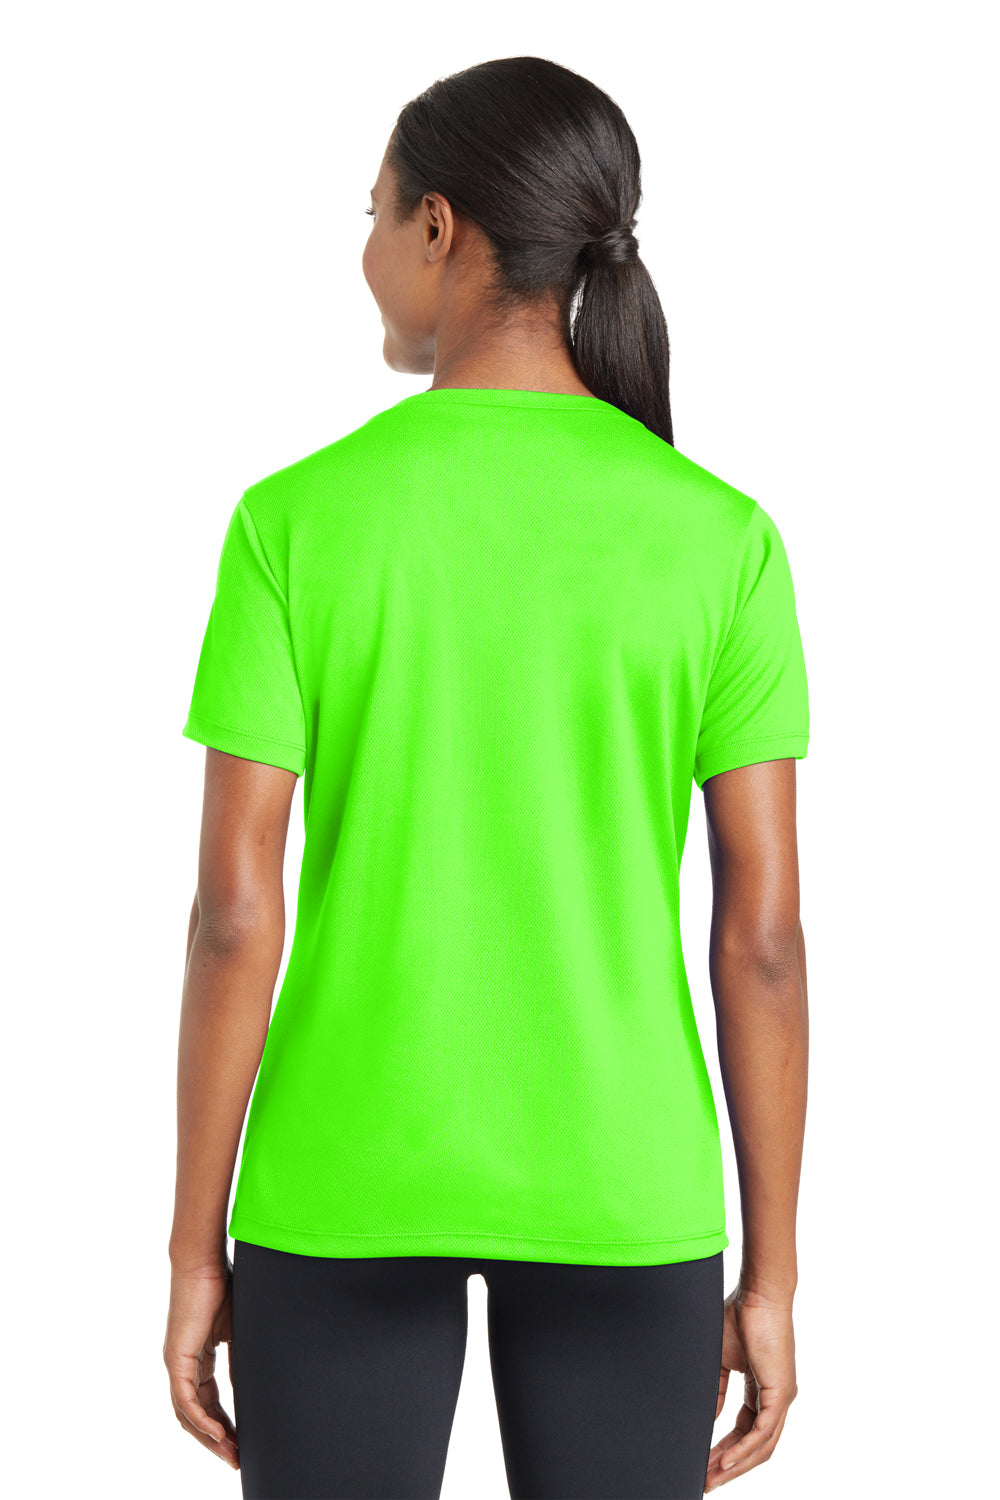 Sport-Tek LST340 Womens Neon Green Sleeve T-Shirt Short — Wicking Moisture RacerMesh V-Neck